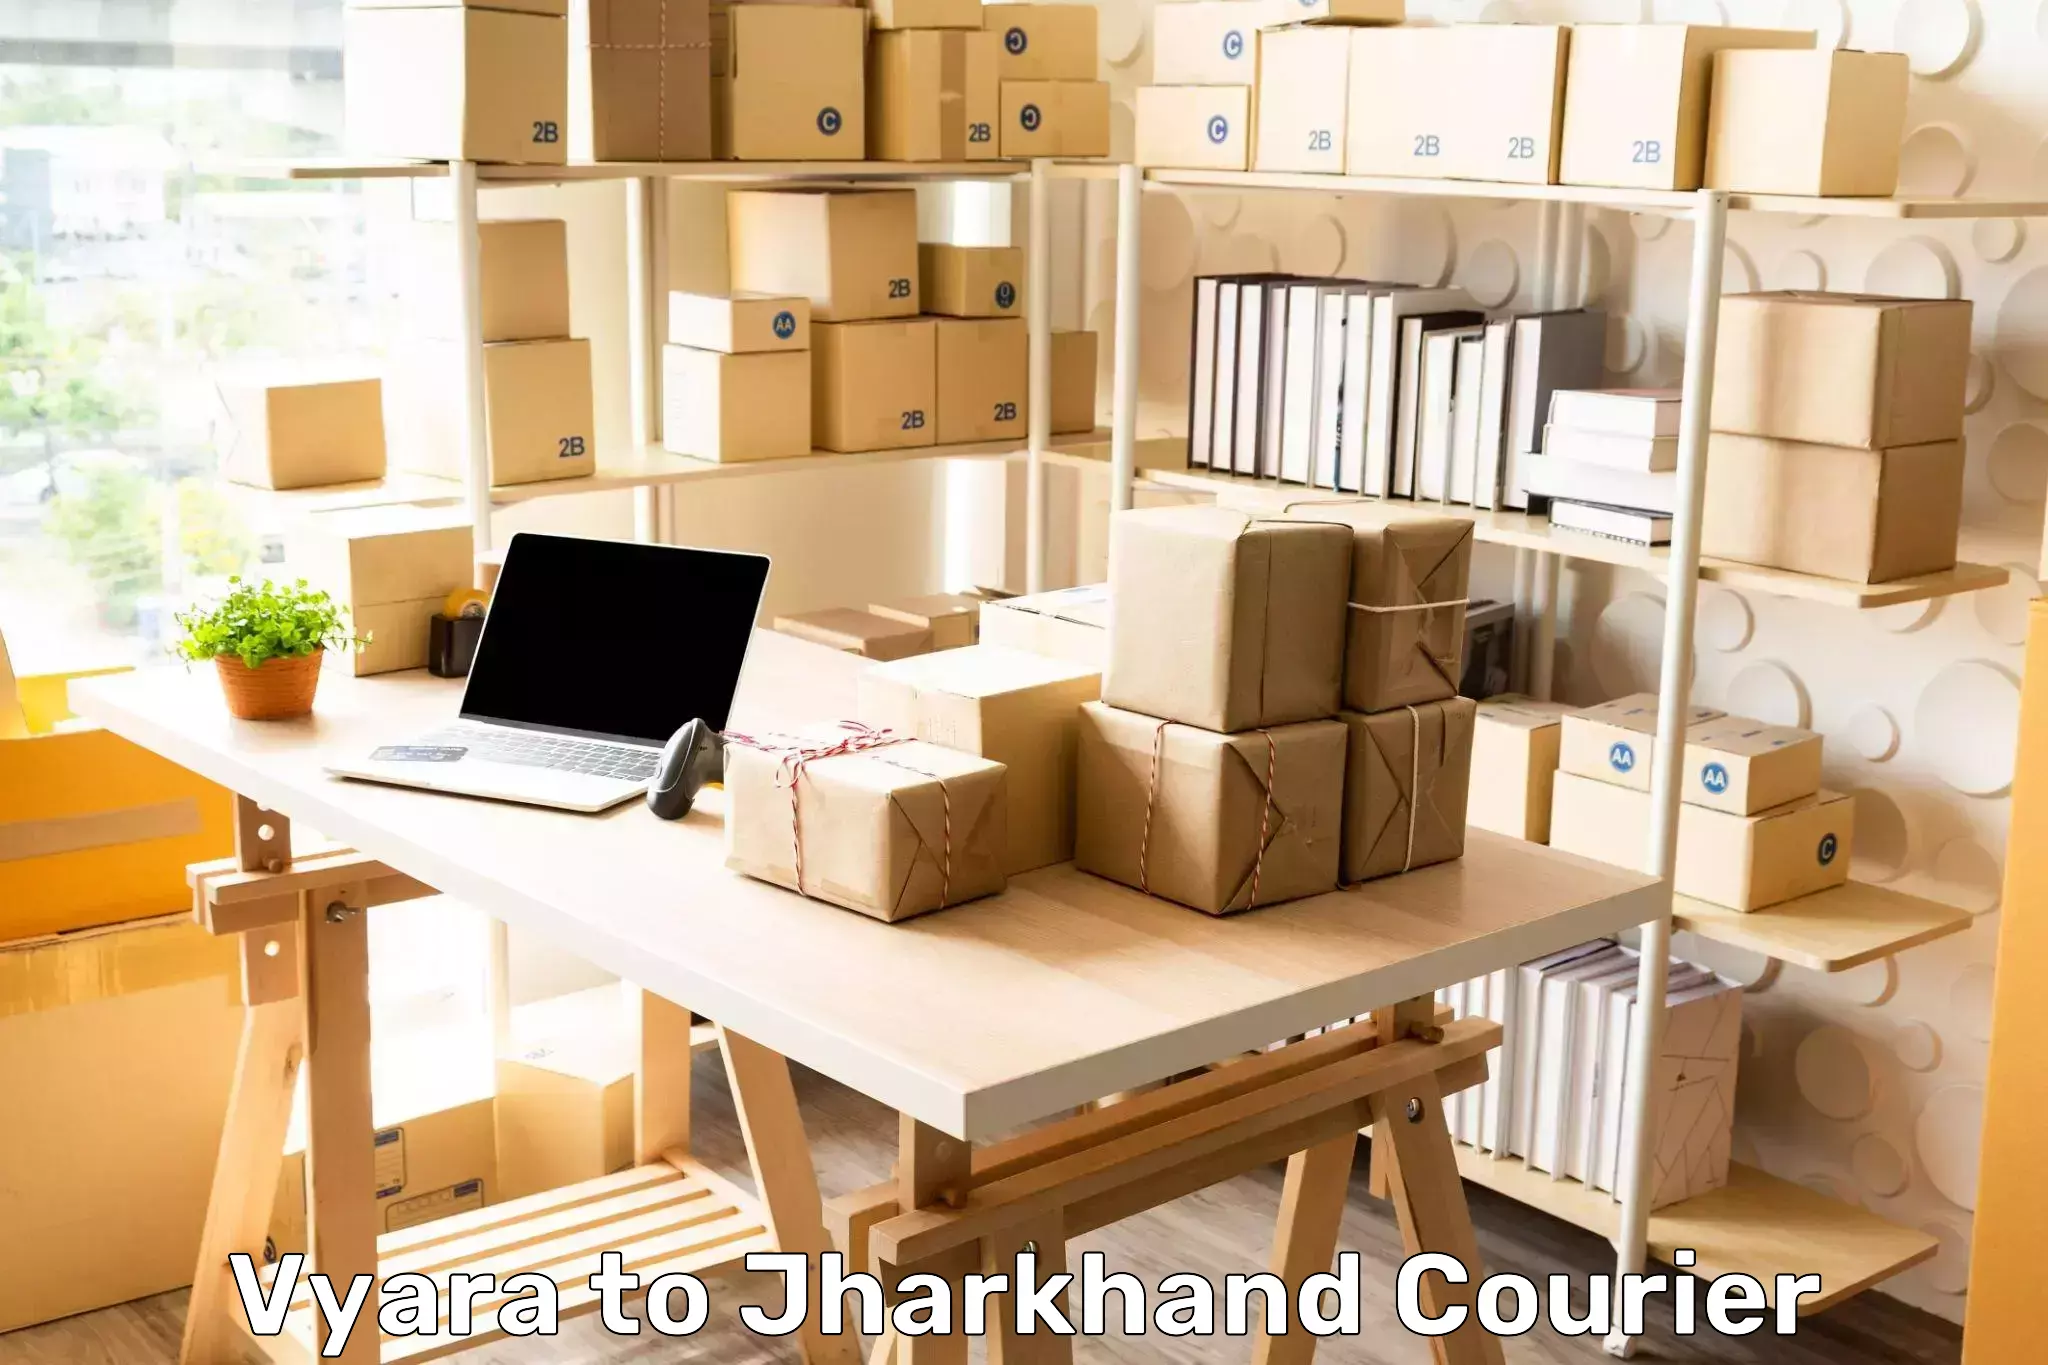 High-capacity shipping options Vyara to Jharkhand